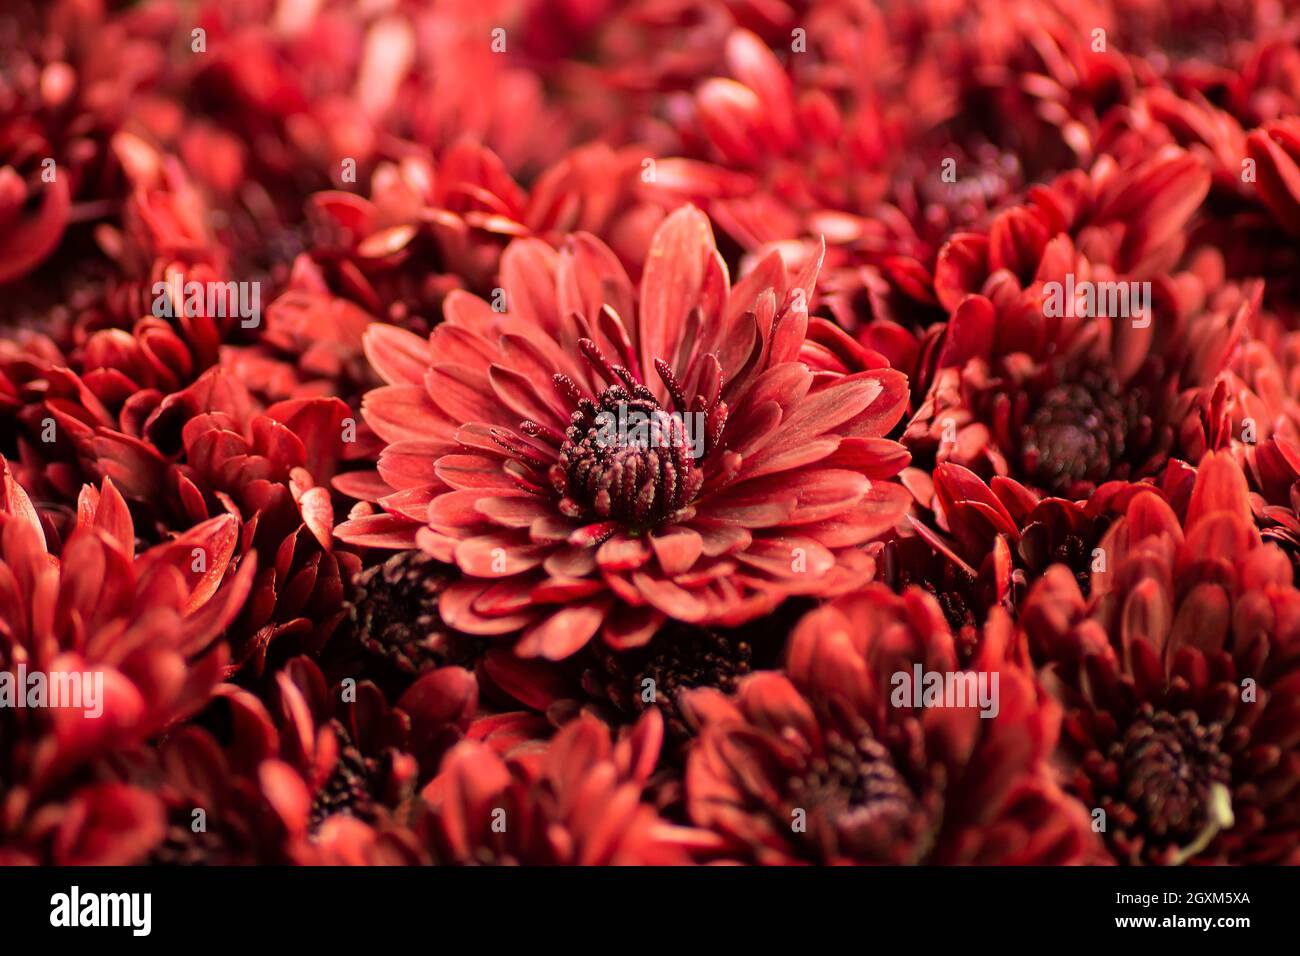 Blooming red chrysanthemums close-up, macro. Korean chrysanthemum. Background with blooming chrysanthemums. Multiflora. Stock Photo